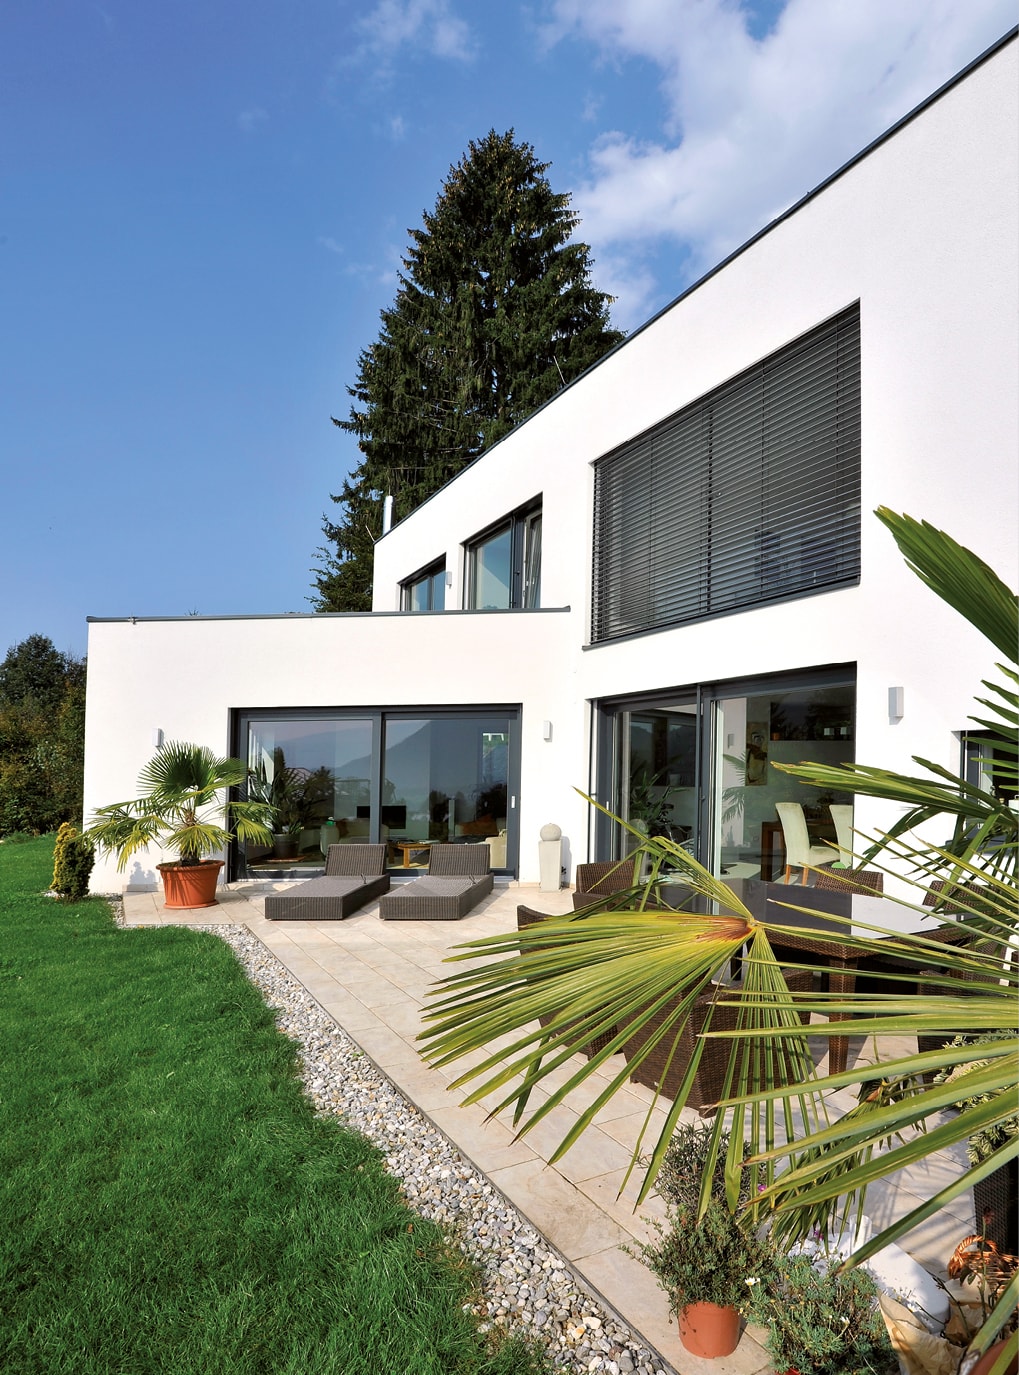 Strussnig Kunststoff-Alu-Fenster (teils mit Sonnenschutz) an weißer Hausfrront